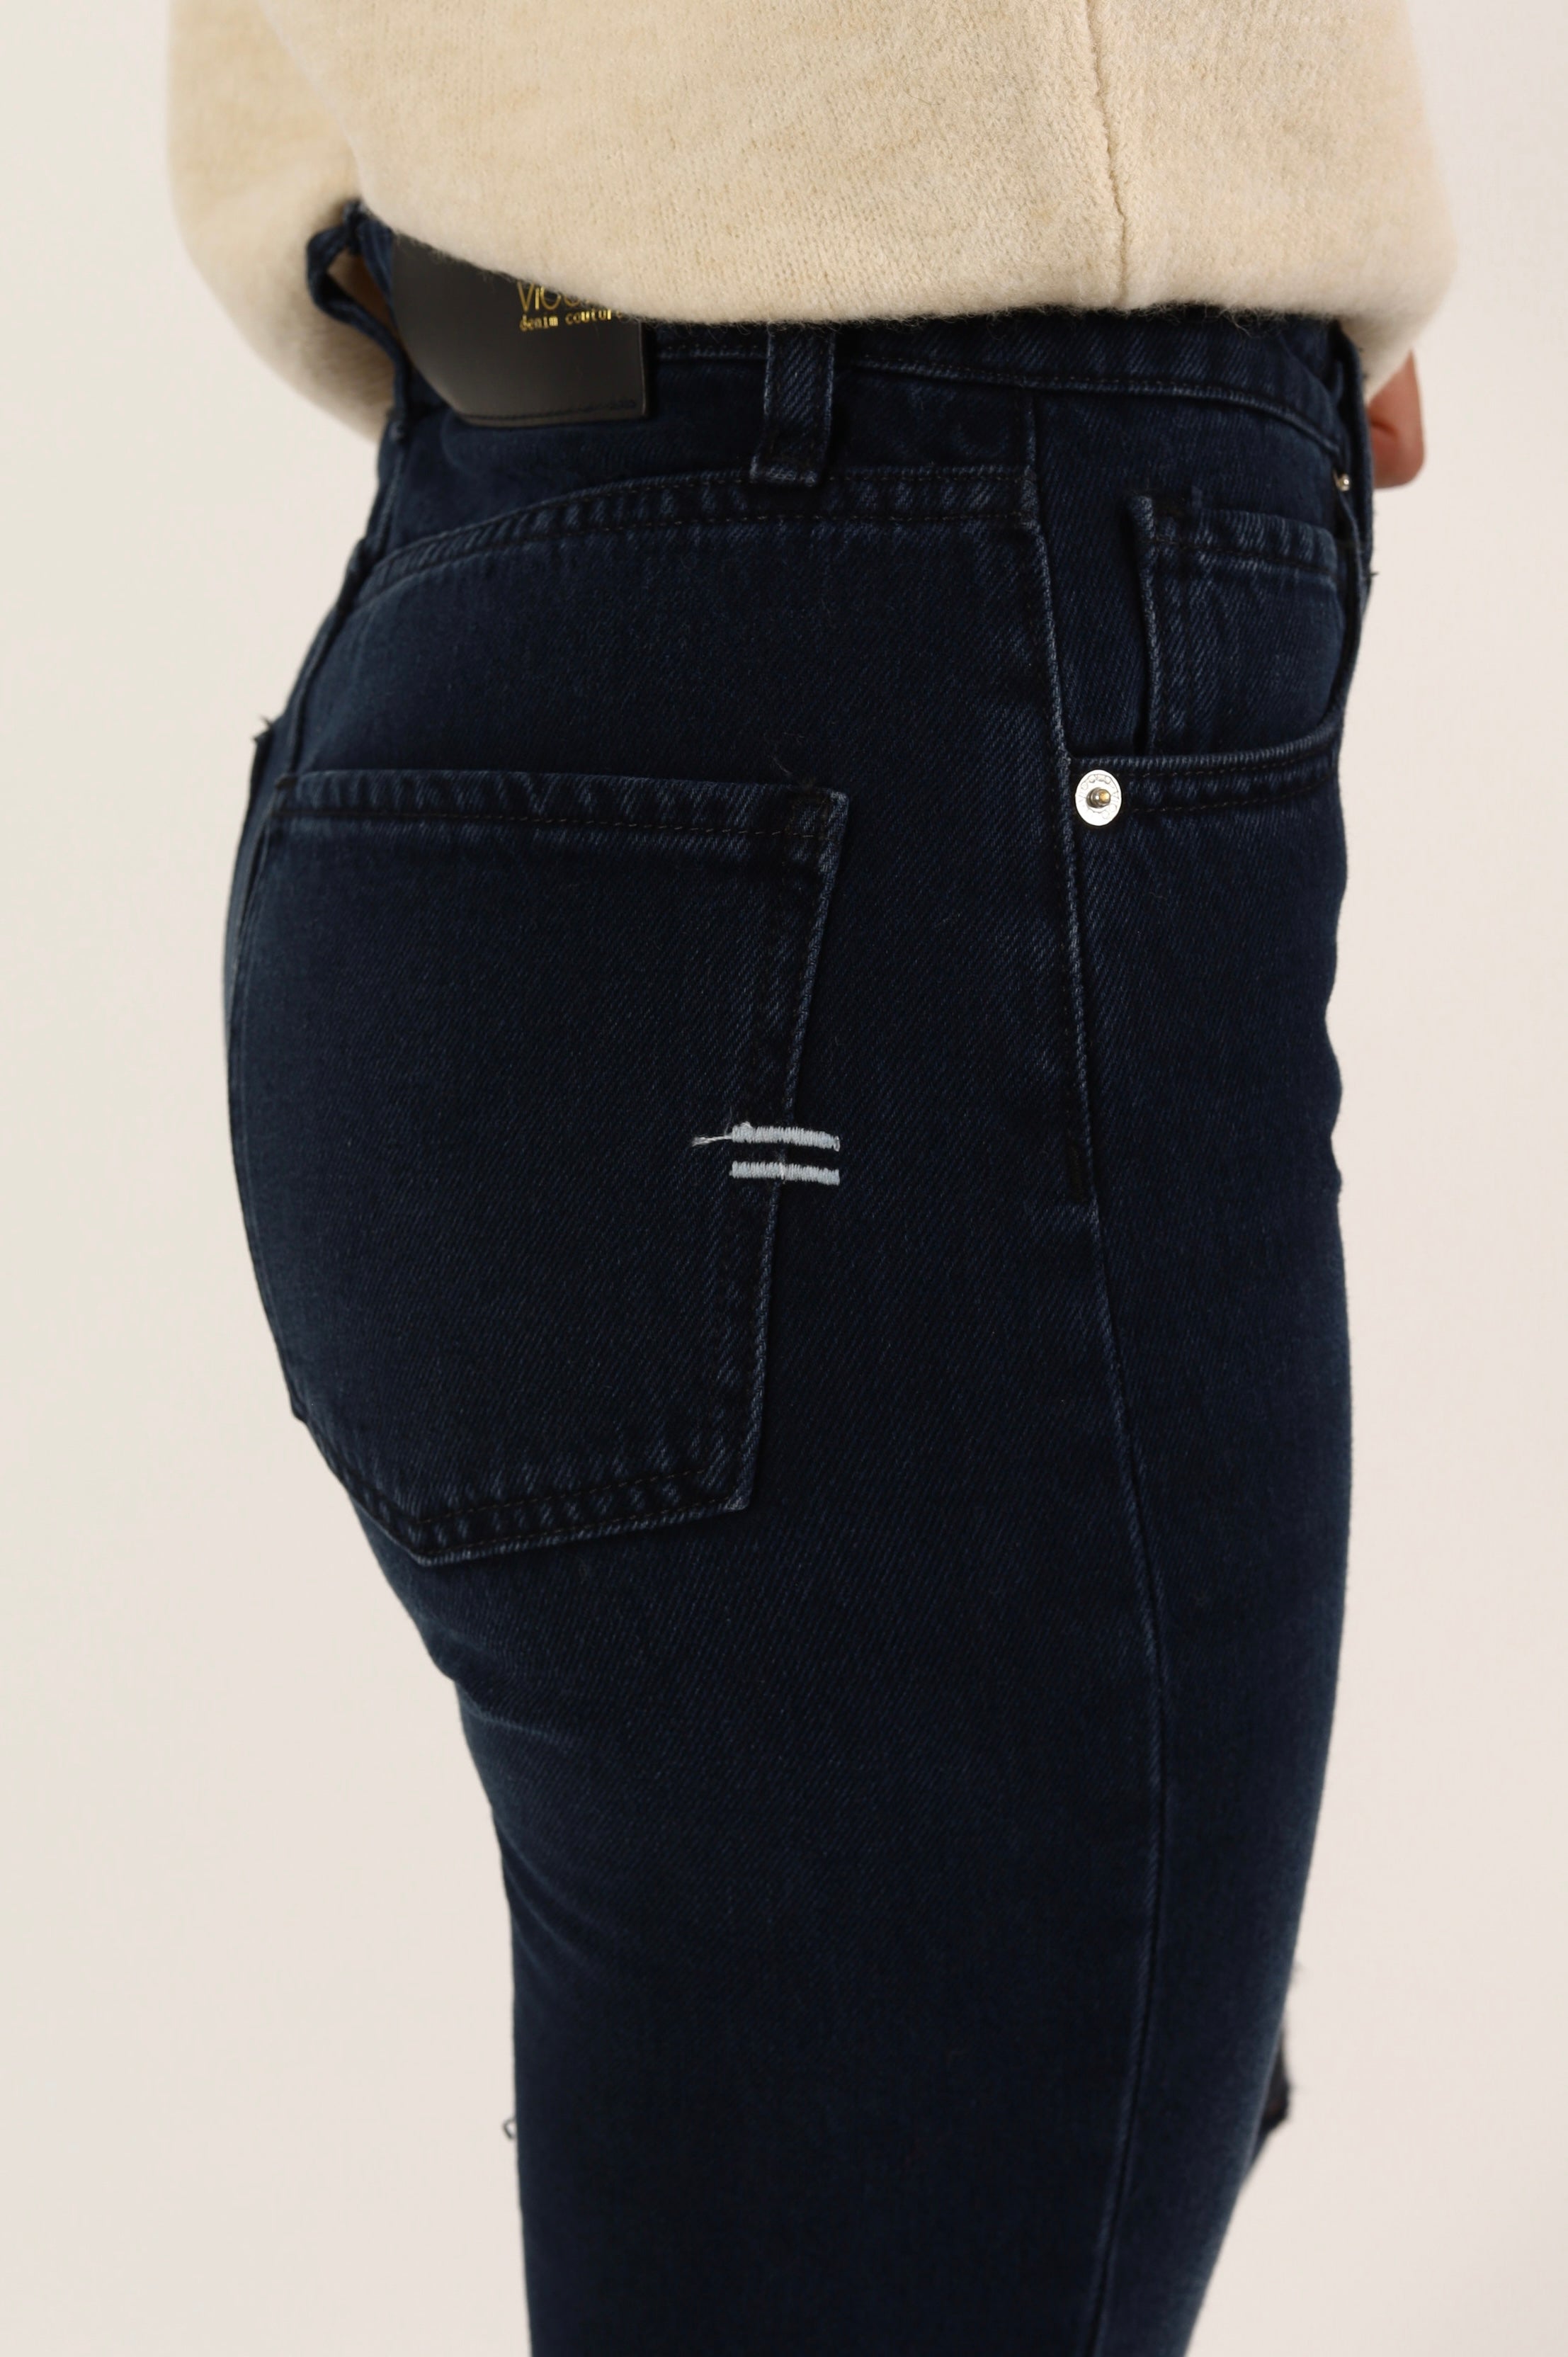 Pantalone jeans donna mod jenna blue black con strappi ginocchi -  denim scuro woman  - 6